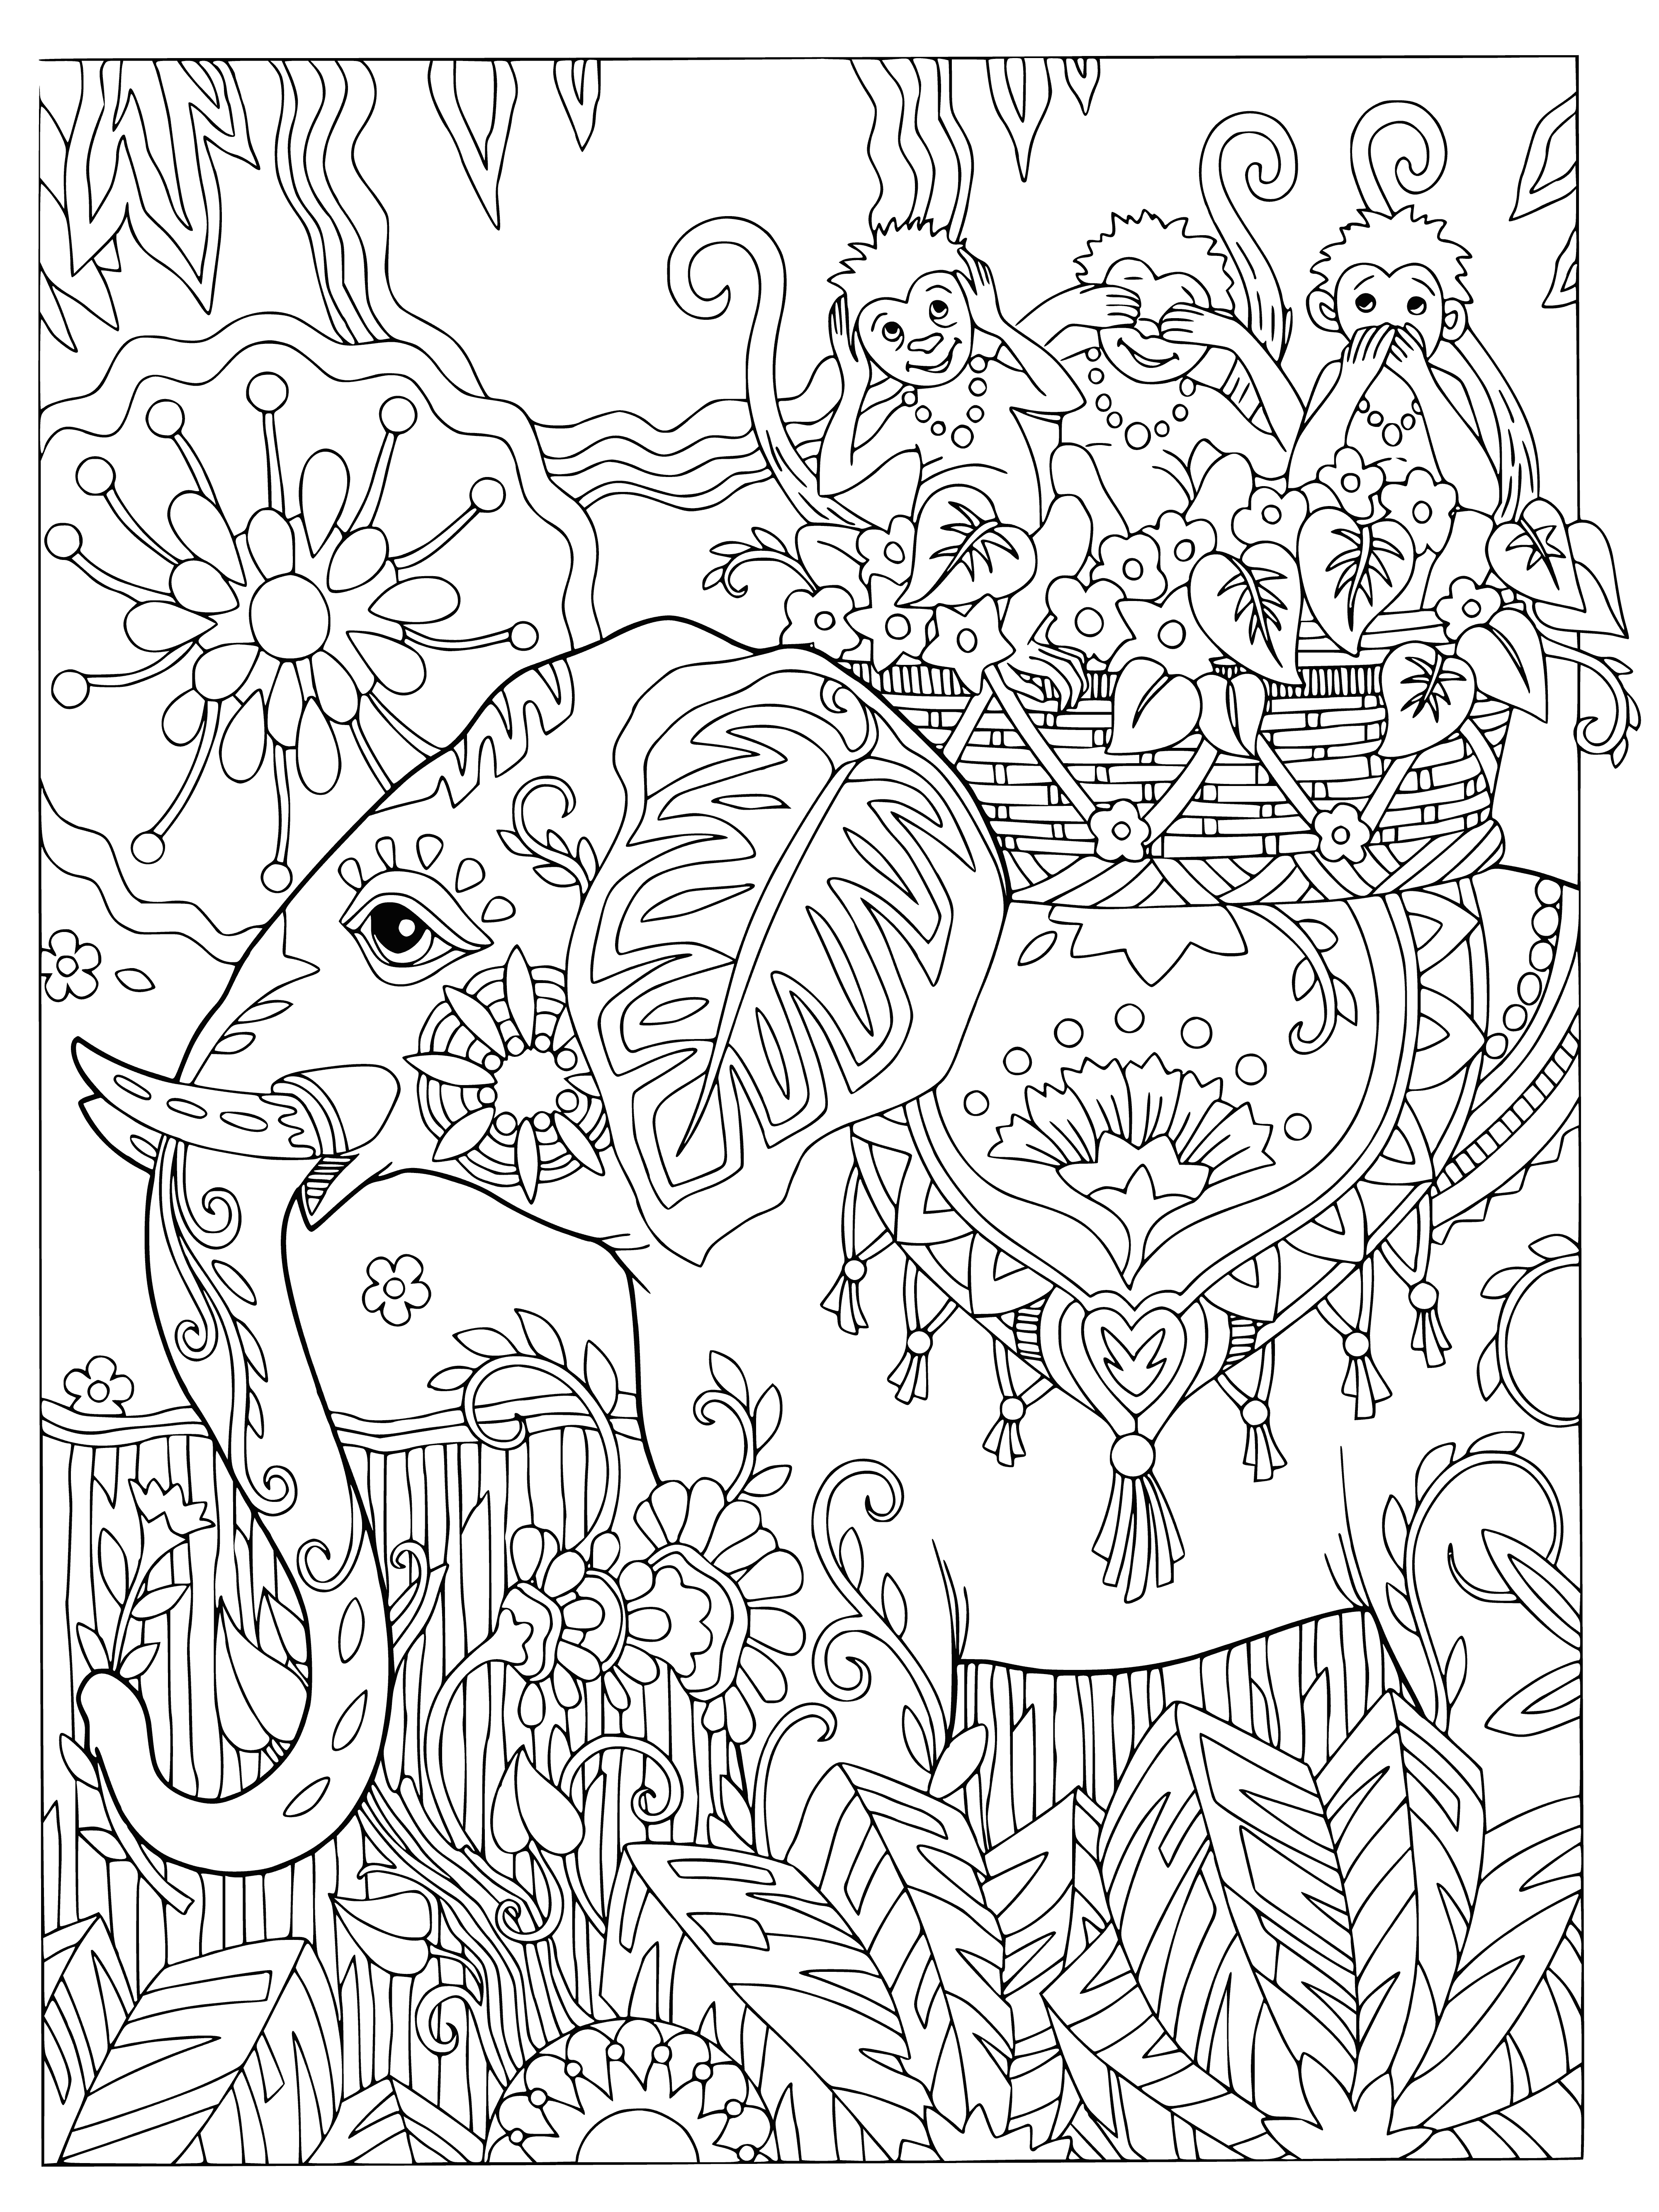 Elefante e macacos página para colorir